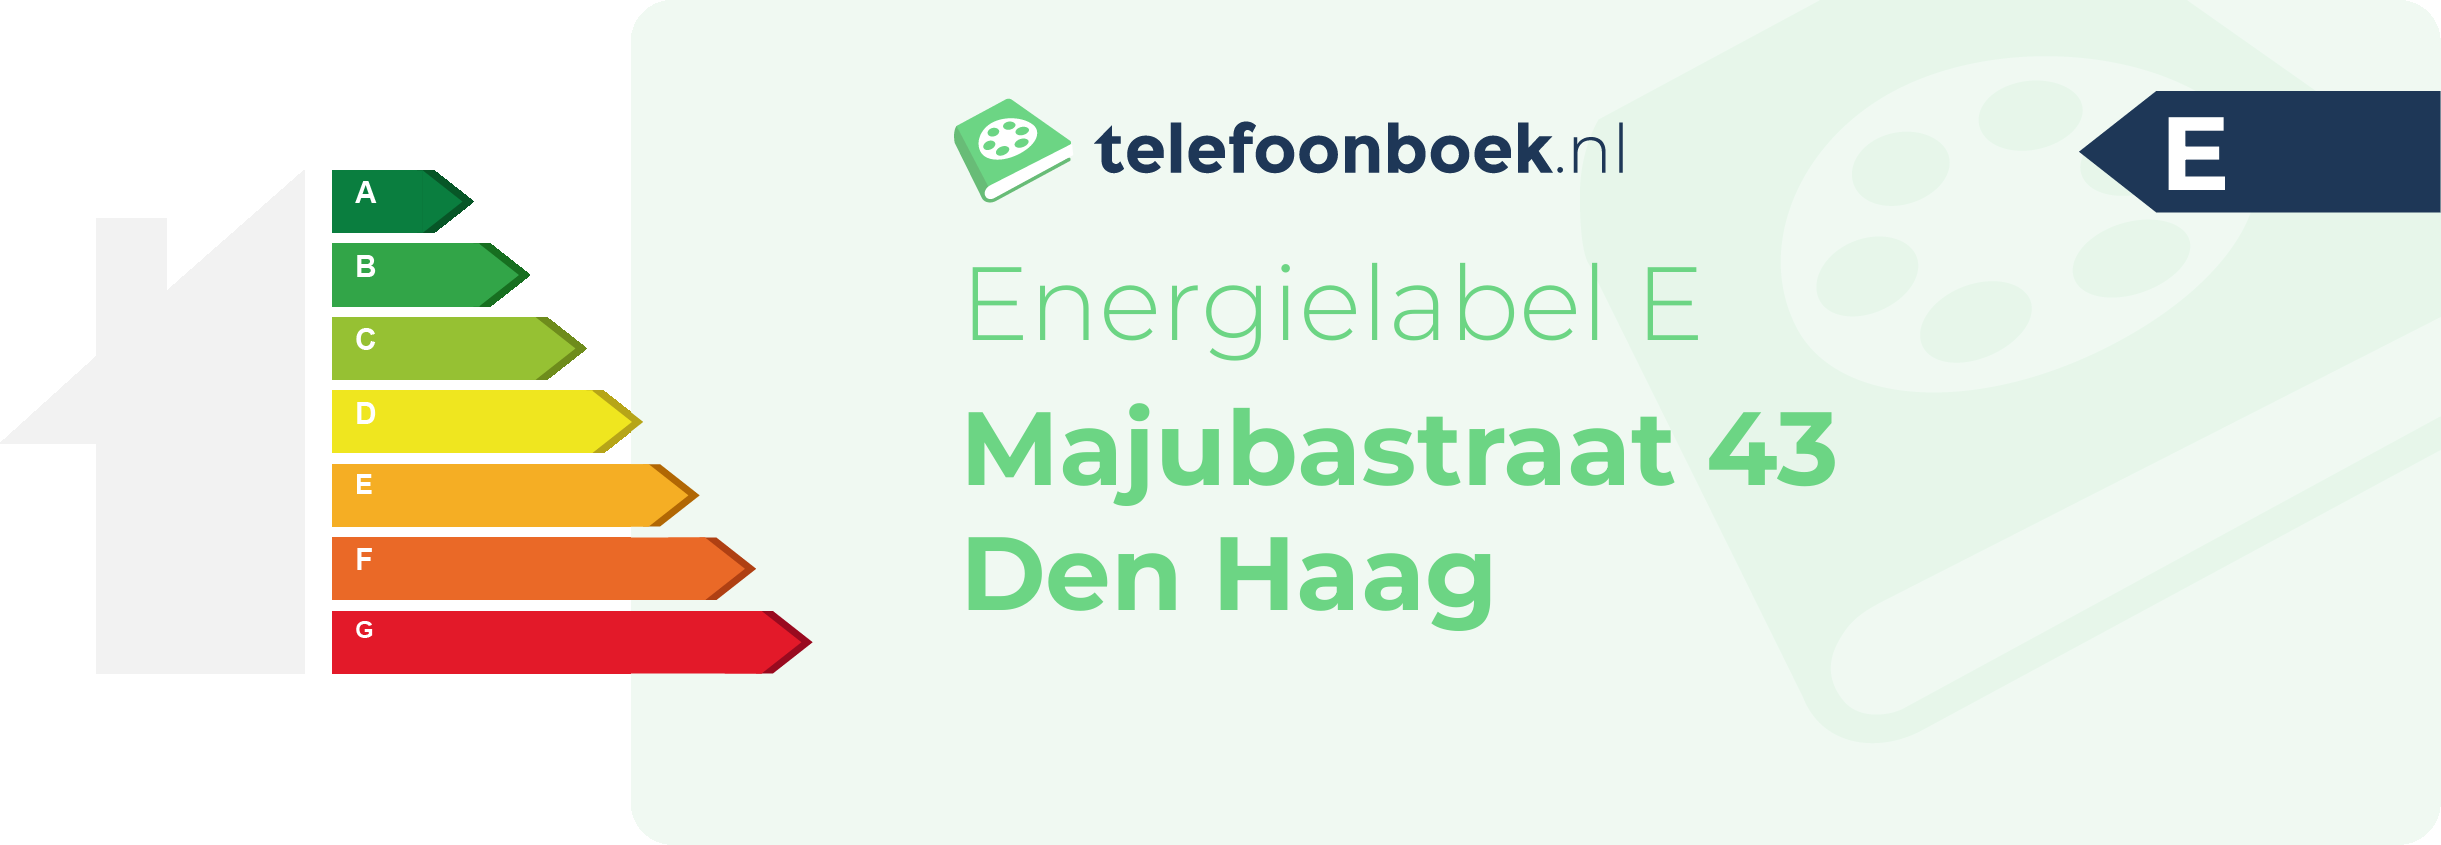 Energielabel Majubastraat 43 Den Haag